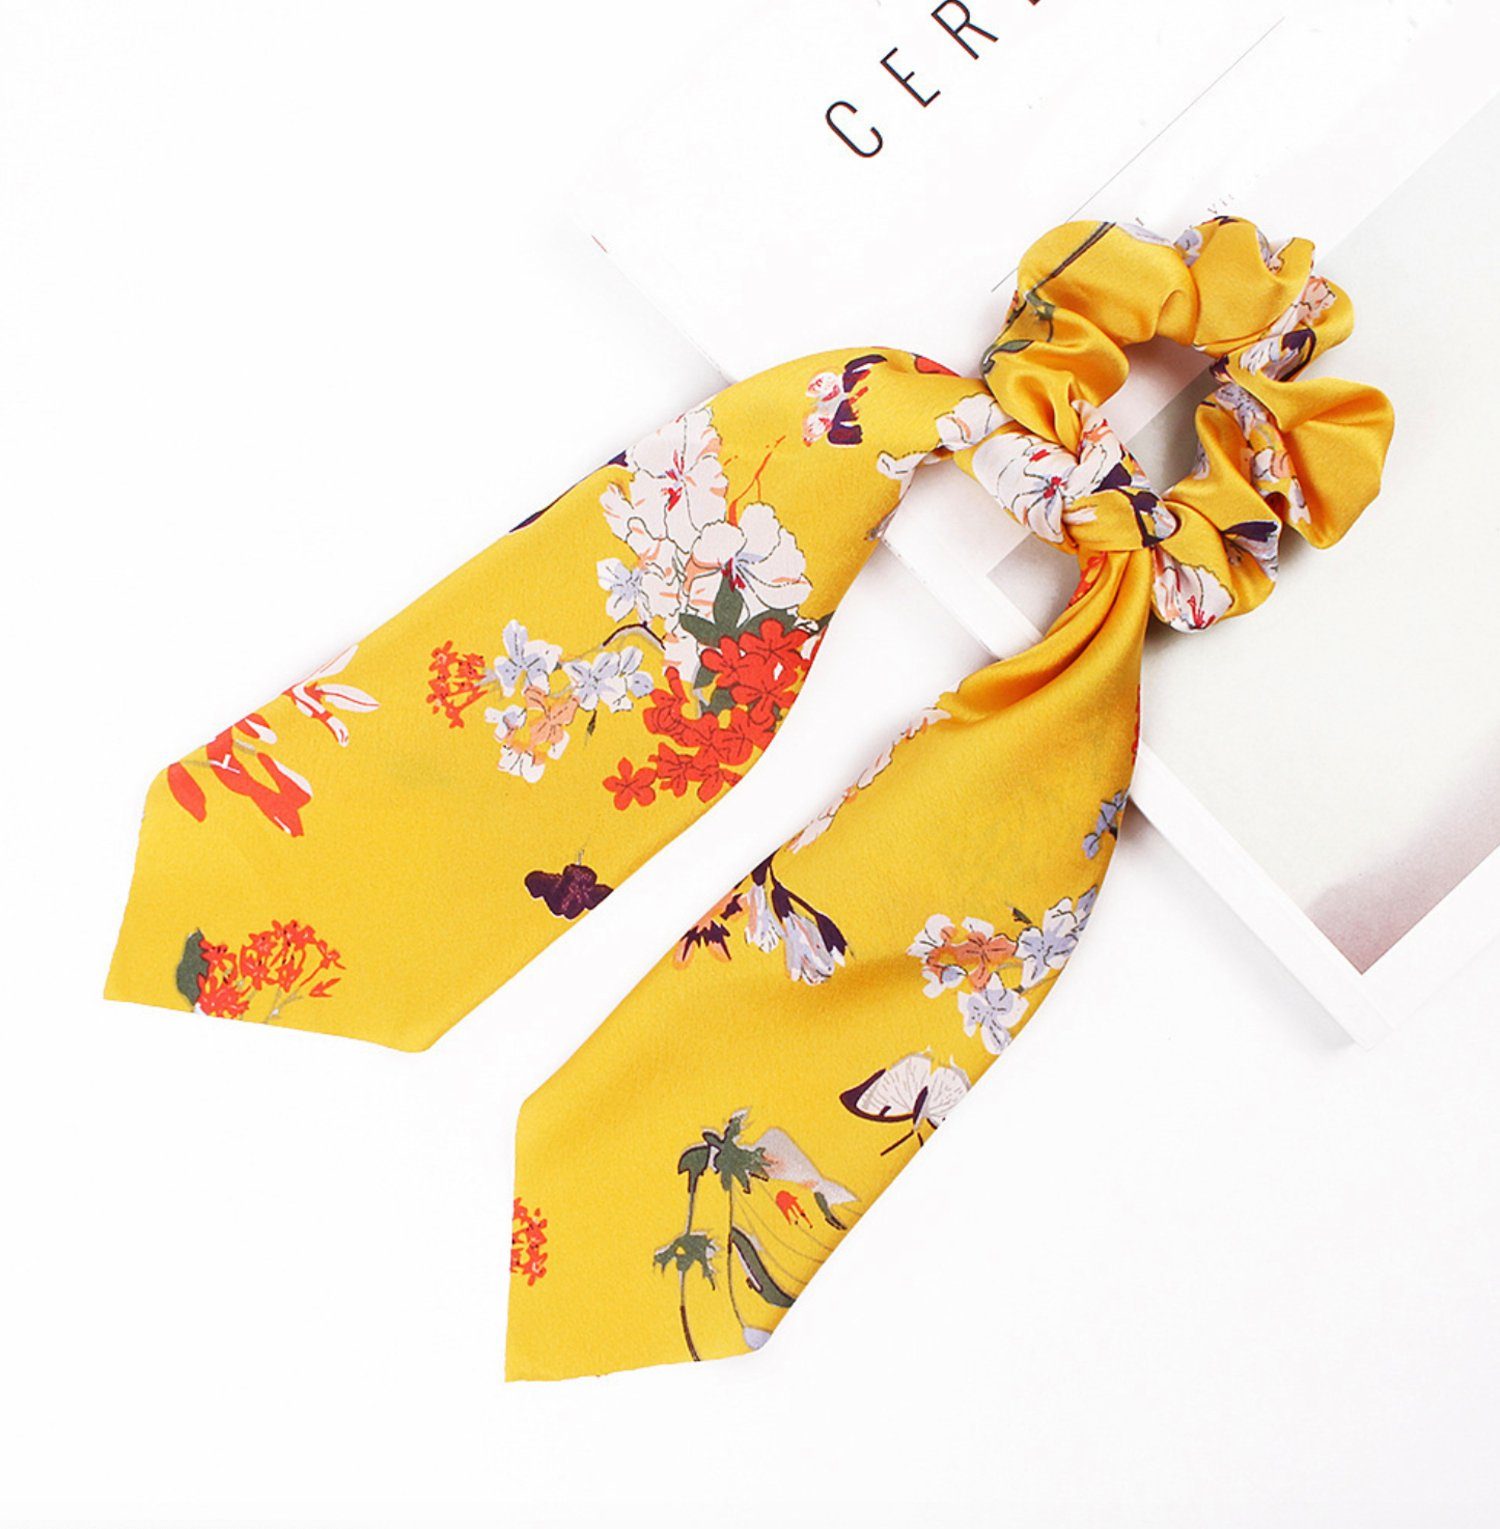 Friseurmeister Haargummi Scrunchie mit Schleife Satin Elastic Haargummis Ribbon Bow für dickes und feines Haar Gelb mit Blumen